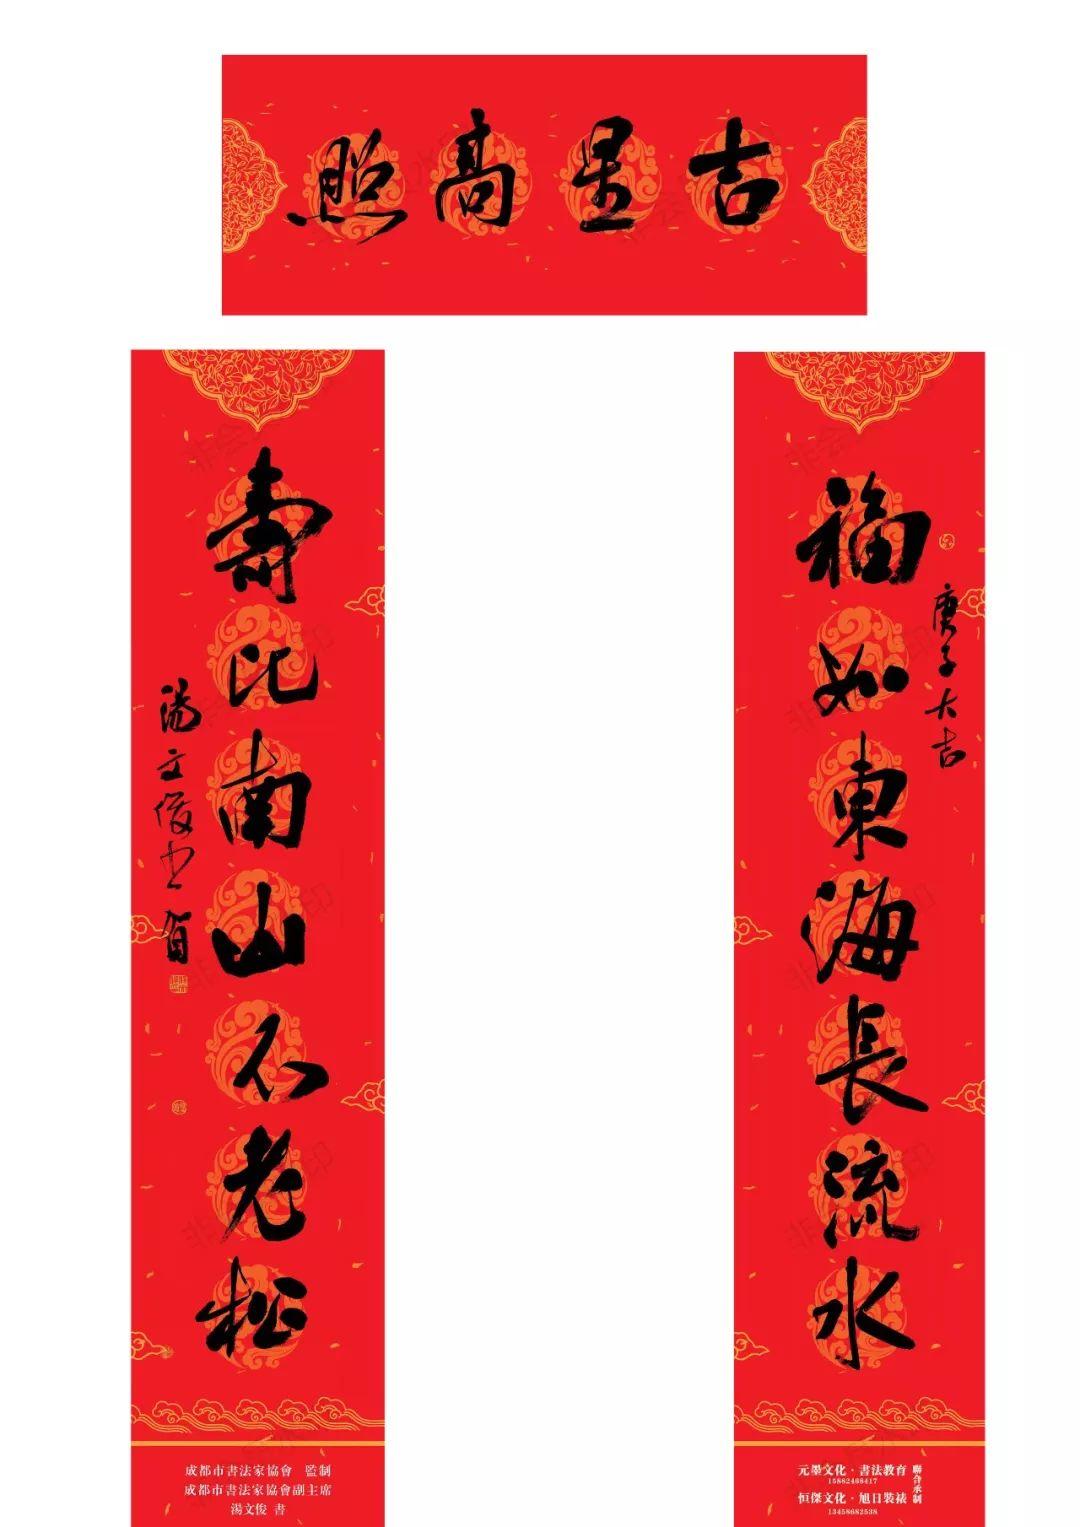 成都市文联、成都市书法家协会联合四川艺术网恭祝大家新年快乐